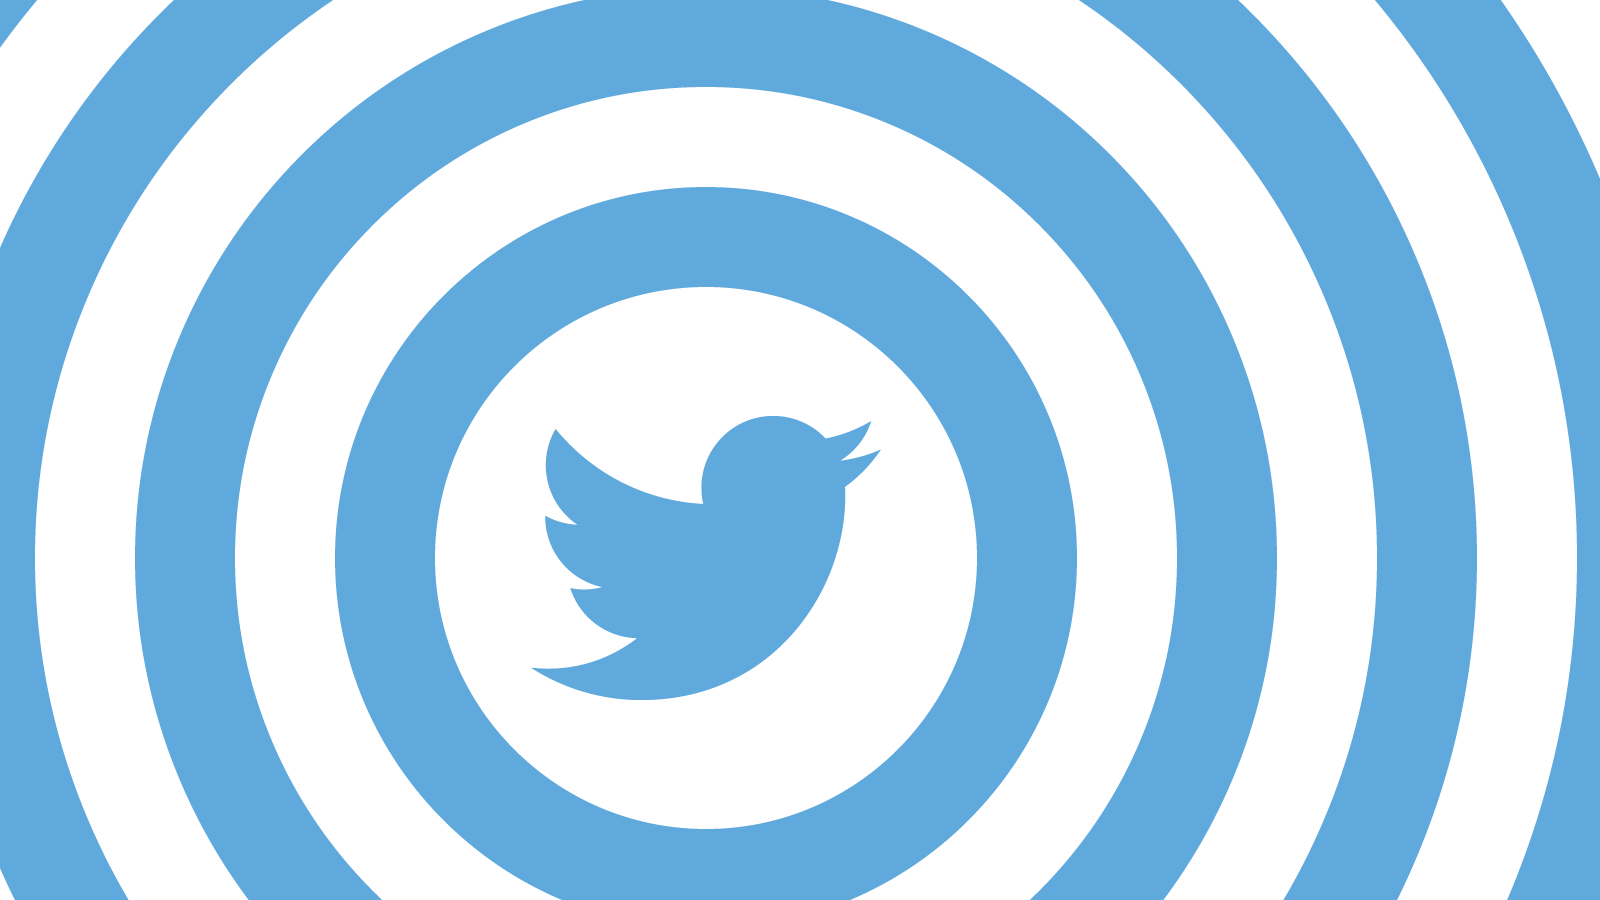 Yandaşlardan 'tekerleme': Twitter'a Twitter üzerinden linç kampanyası